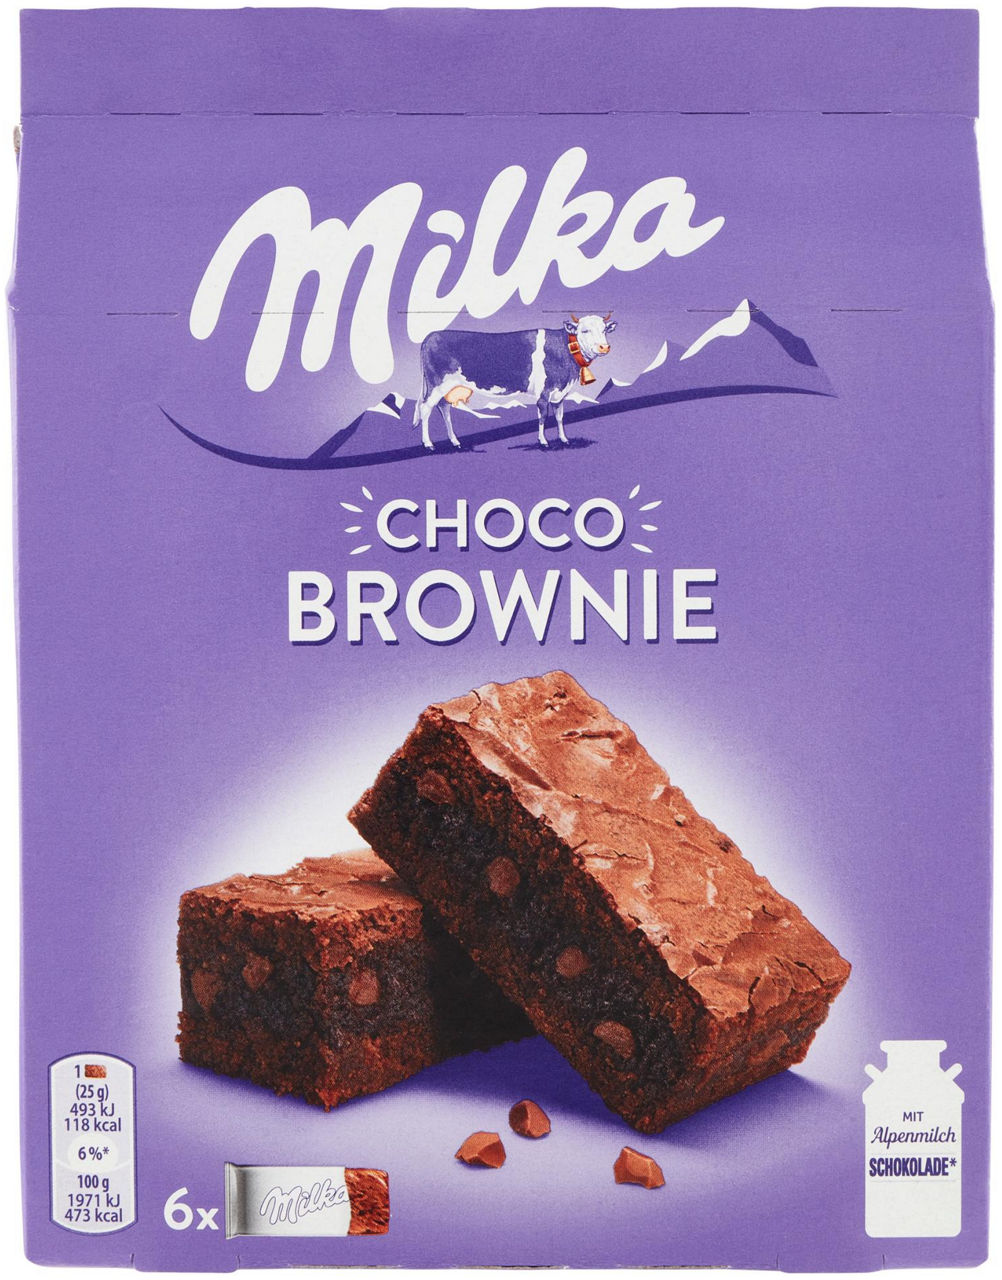 Choco brownie, merendina al cioccolato al latte - 6x25g